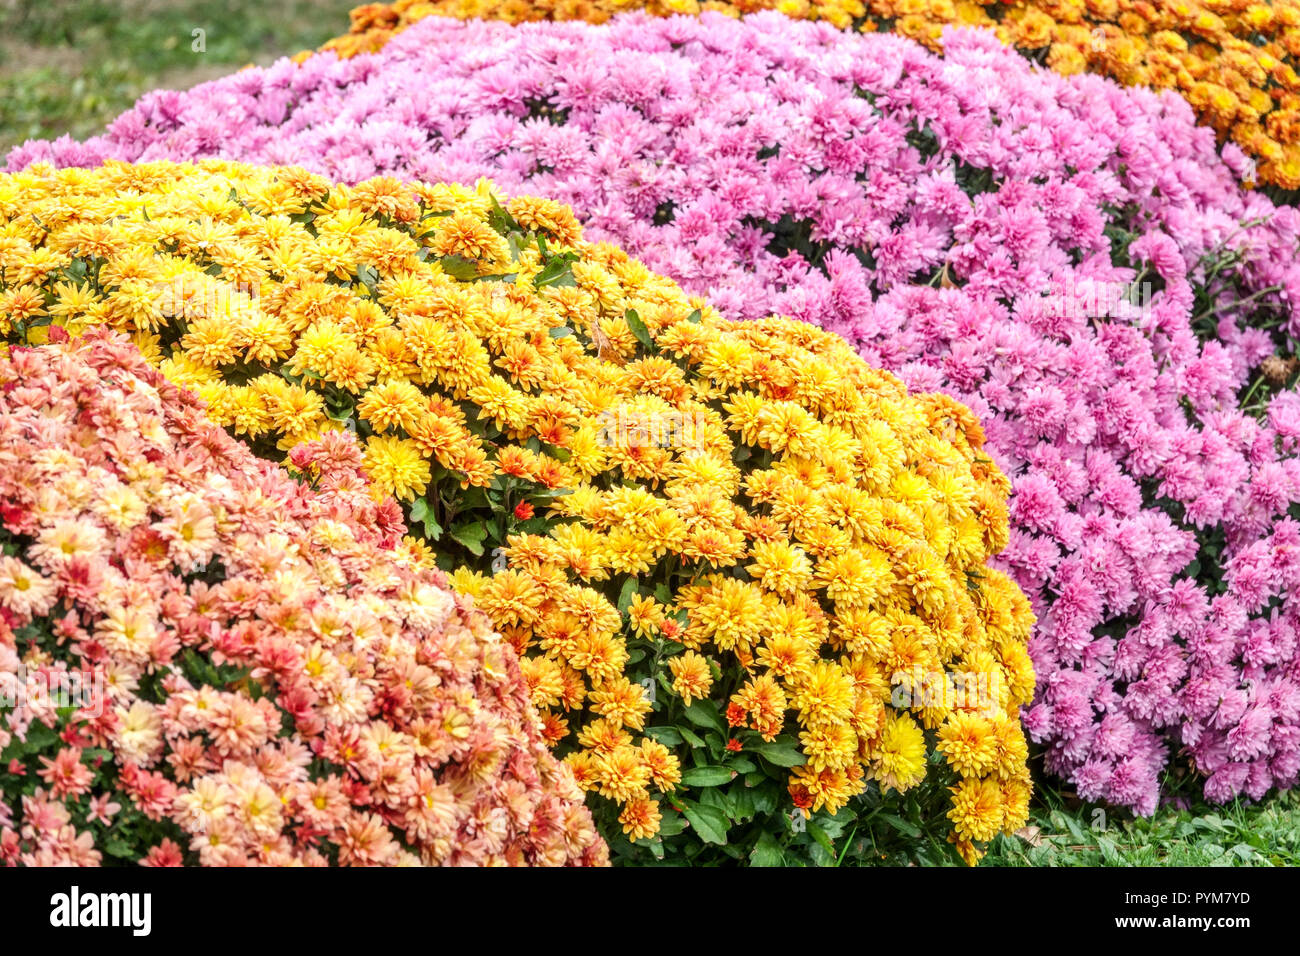 Viele Blumen, Farbkombination Chrysanthemen, Herbstblumen im Garten, Kontrast und farbenfrohes Blumenbeet Oktobergarten Mütter Stockfoto